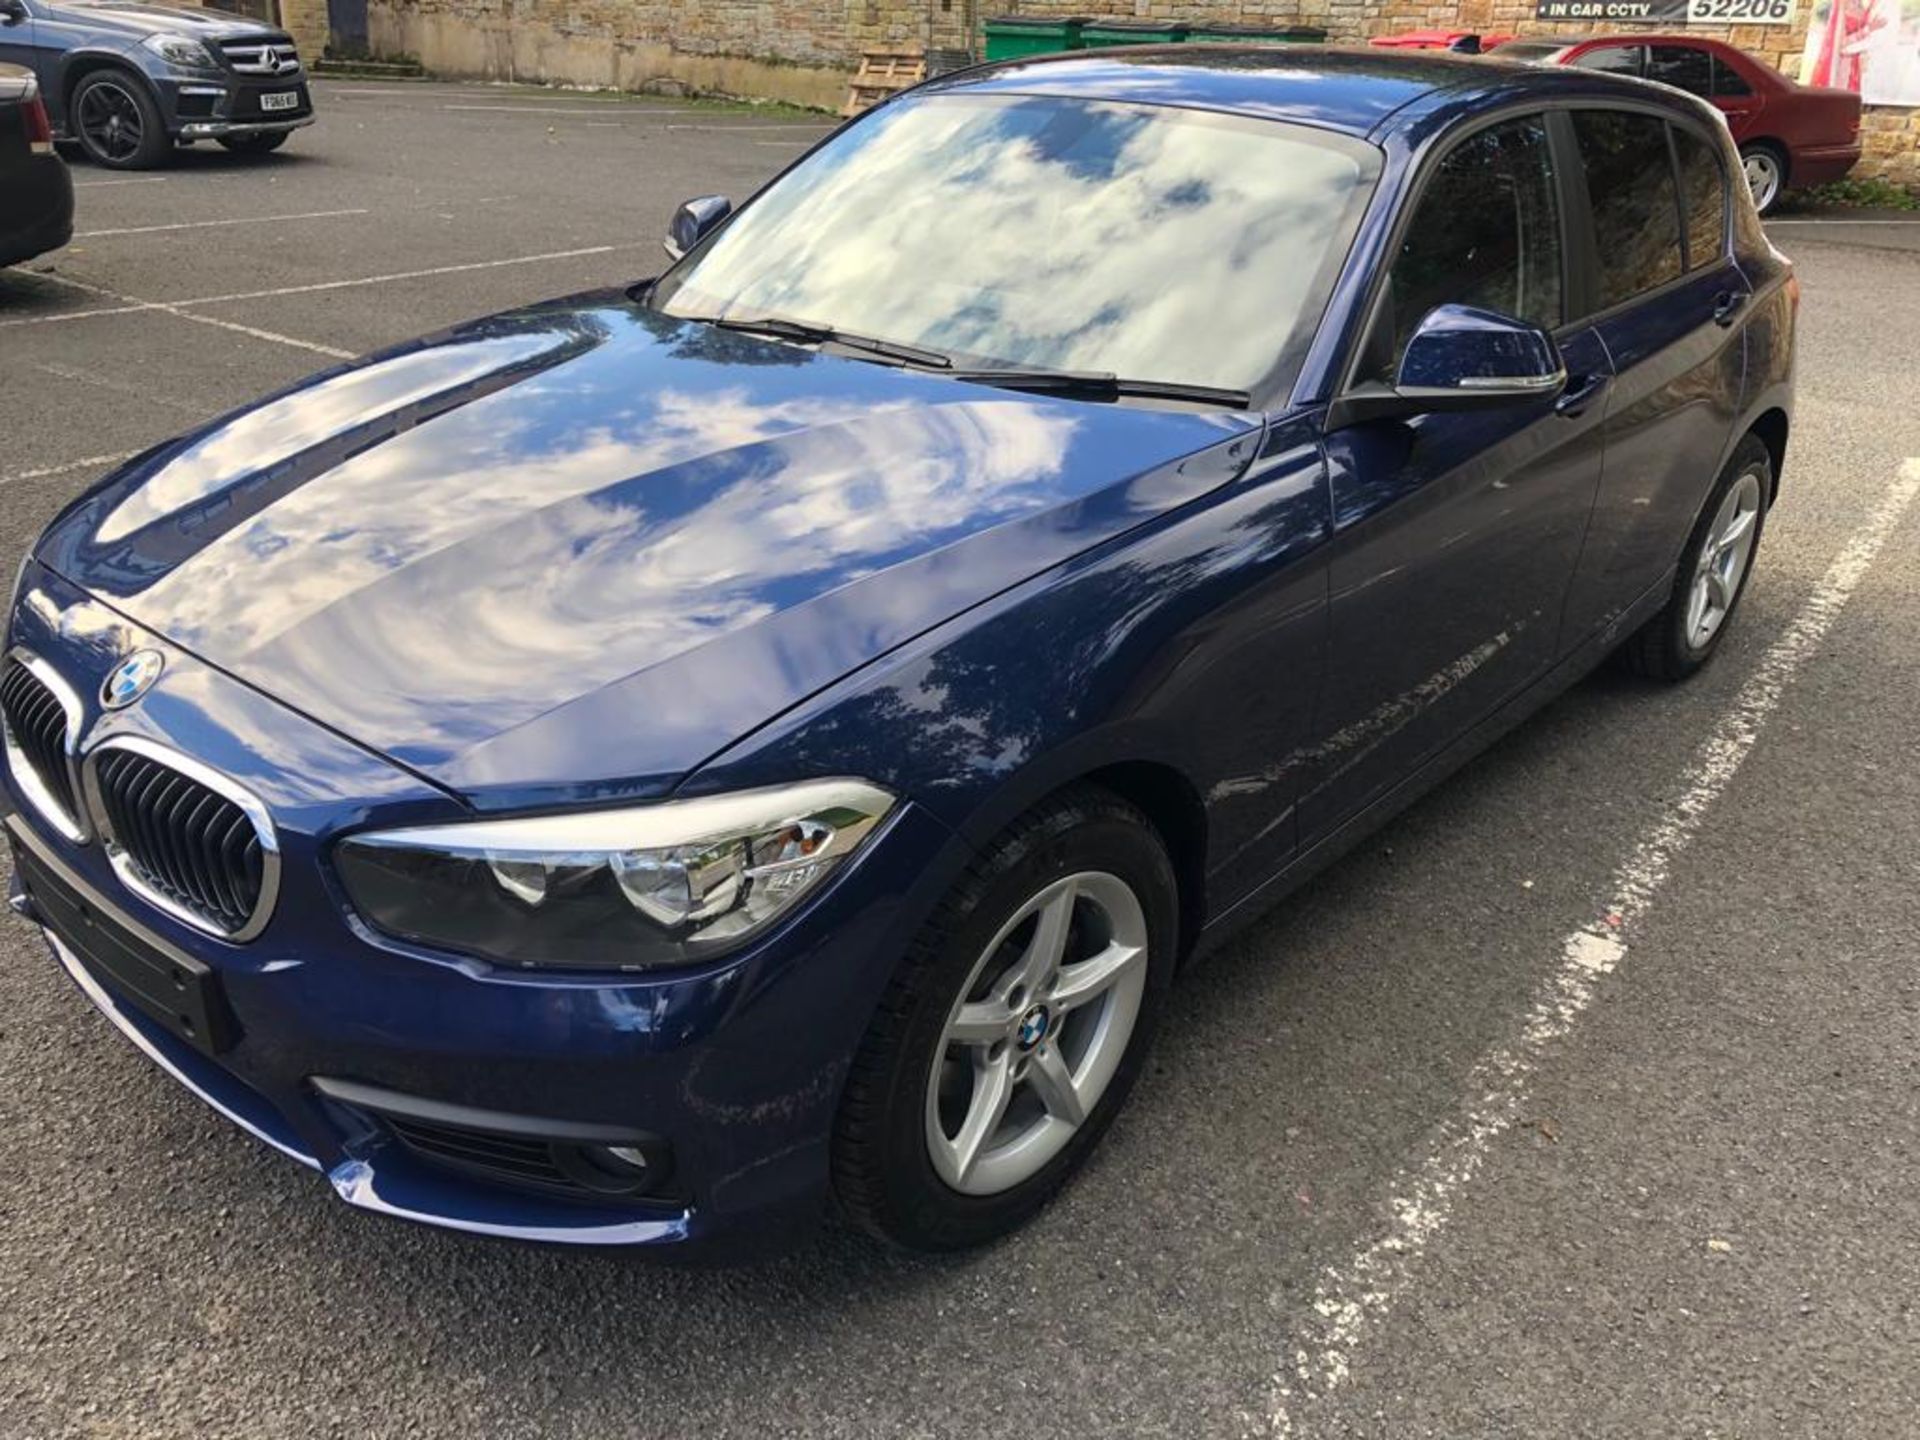 2018/67 REG BMW 118D SE AUTOMATIC BLUE DIESEL 5 DOOR HATCHBACK, SHOWING 0 FORMER KEEPERS *PLUS VAT* - Image 2 of 18